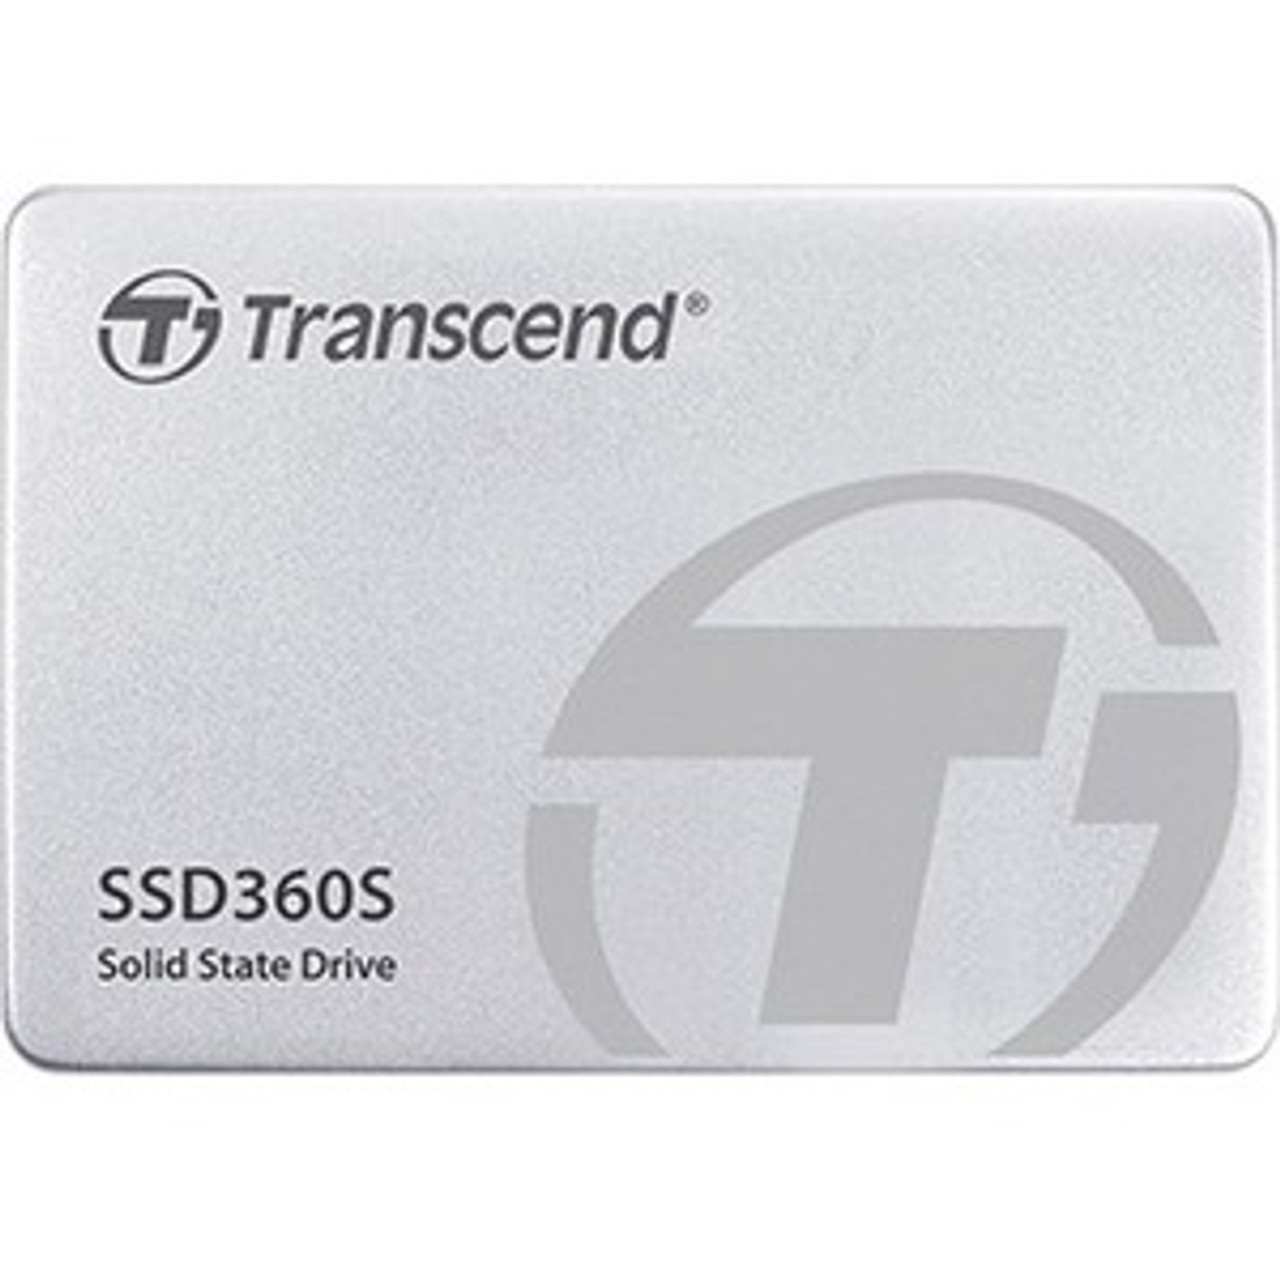 Transcend SSD360S 64 GB Solid State Drive - 2.5" Internal - 58 TB TBW - 430 MB/s Maximum Read Transfer  MFR P/N TS64GSSD360S